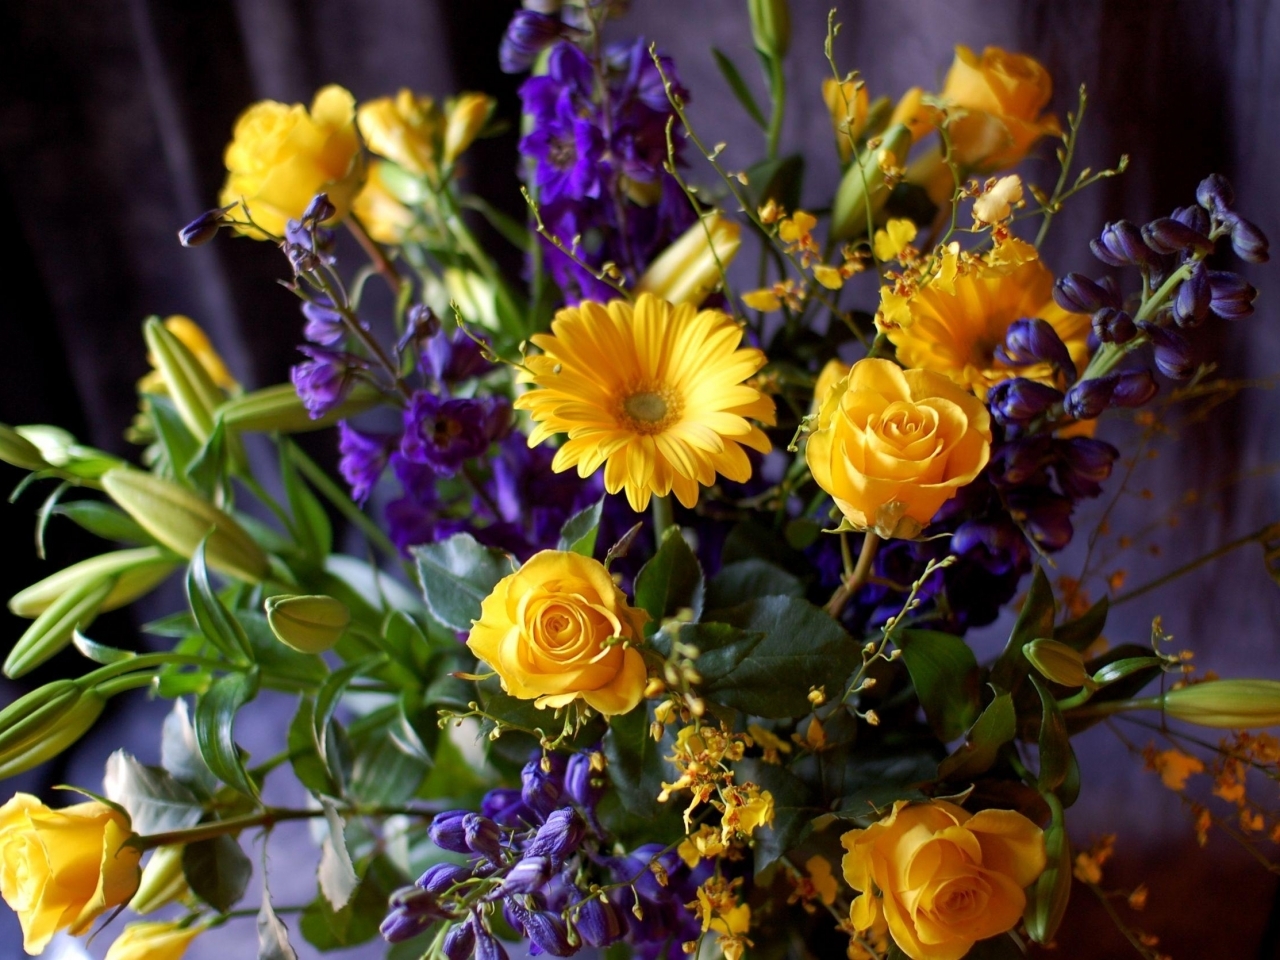 bouquets, plants, flowers 1080p